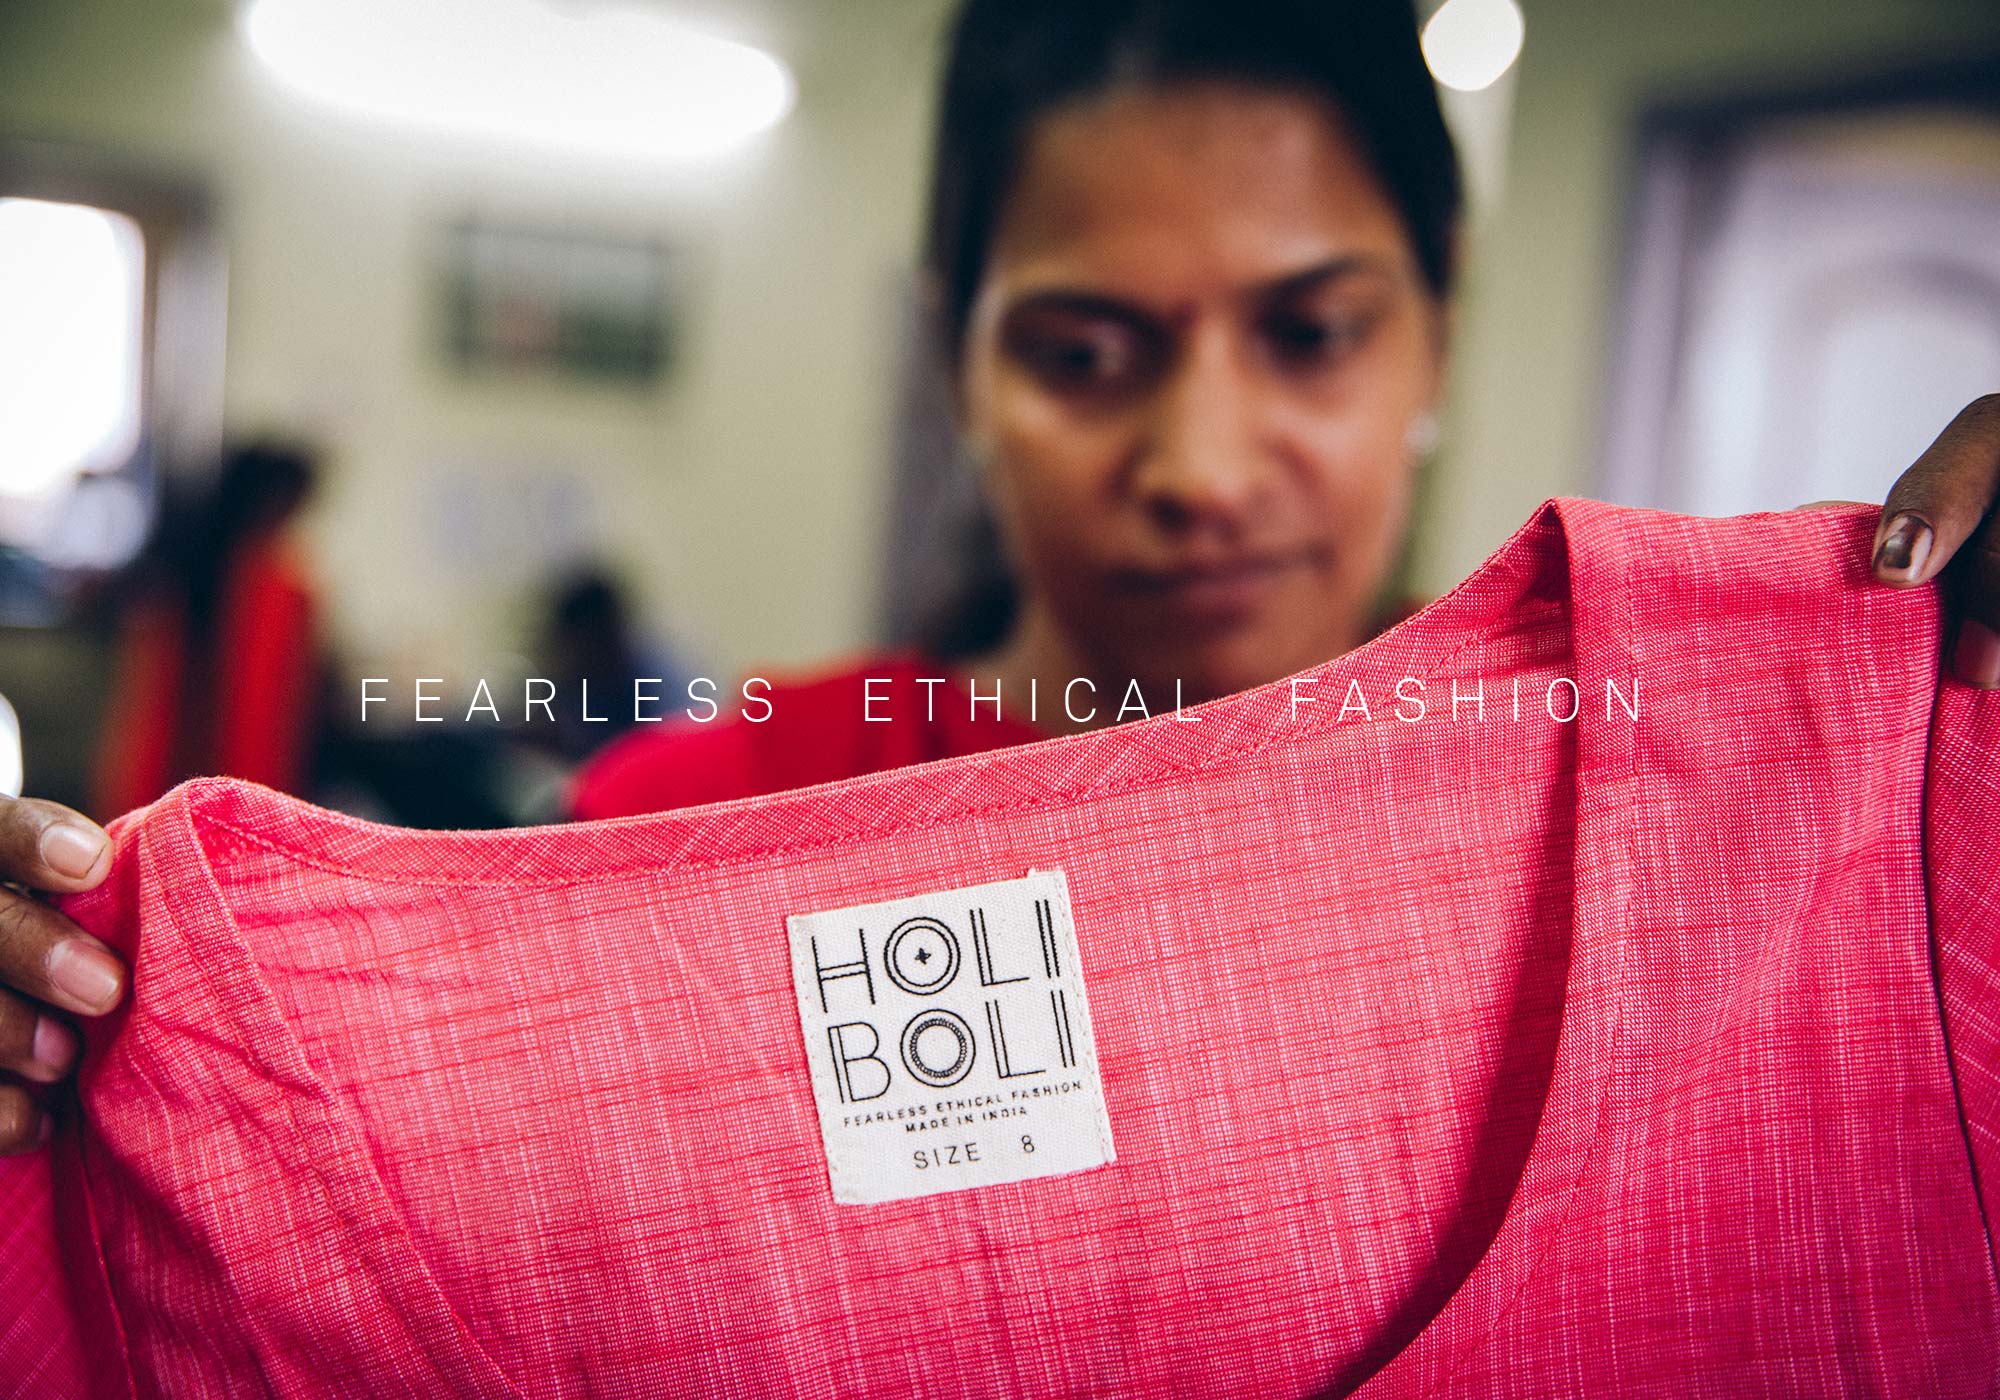 holi-boli-ethical-fashion-india-banner-27